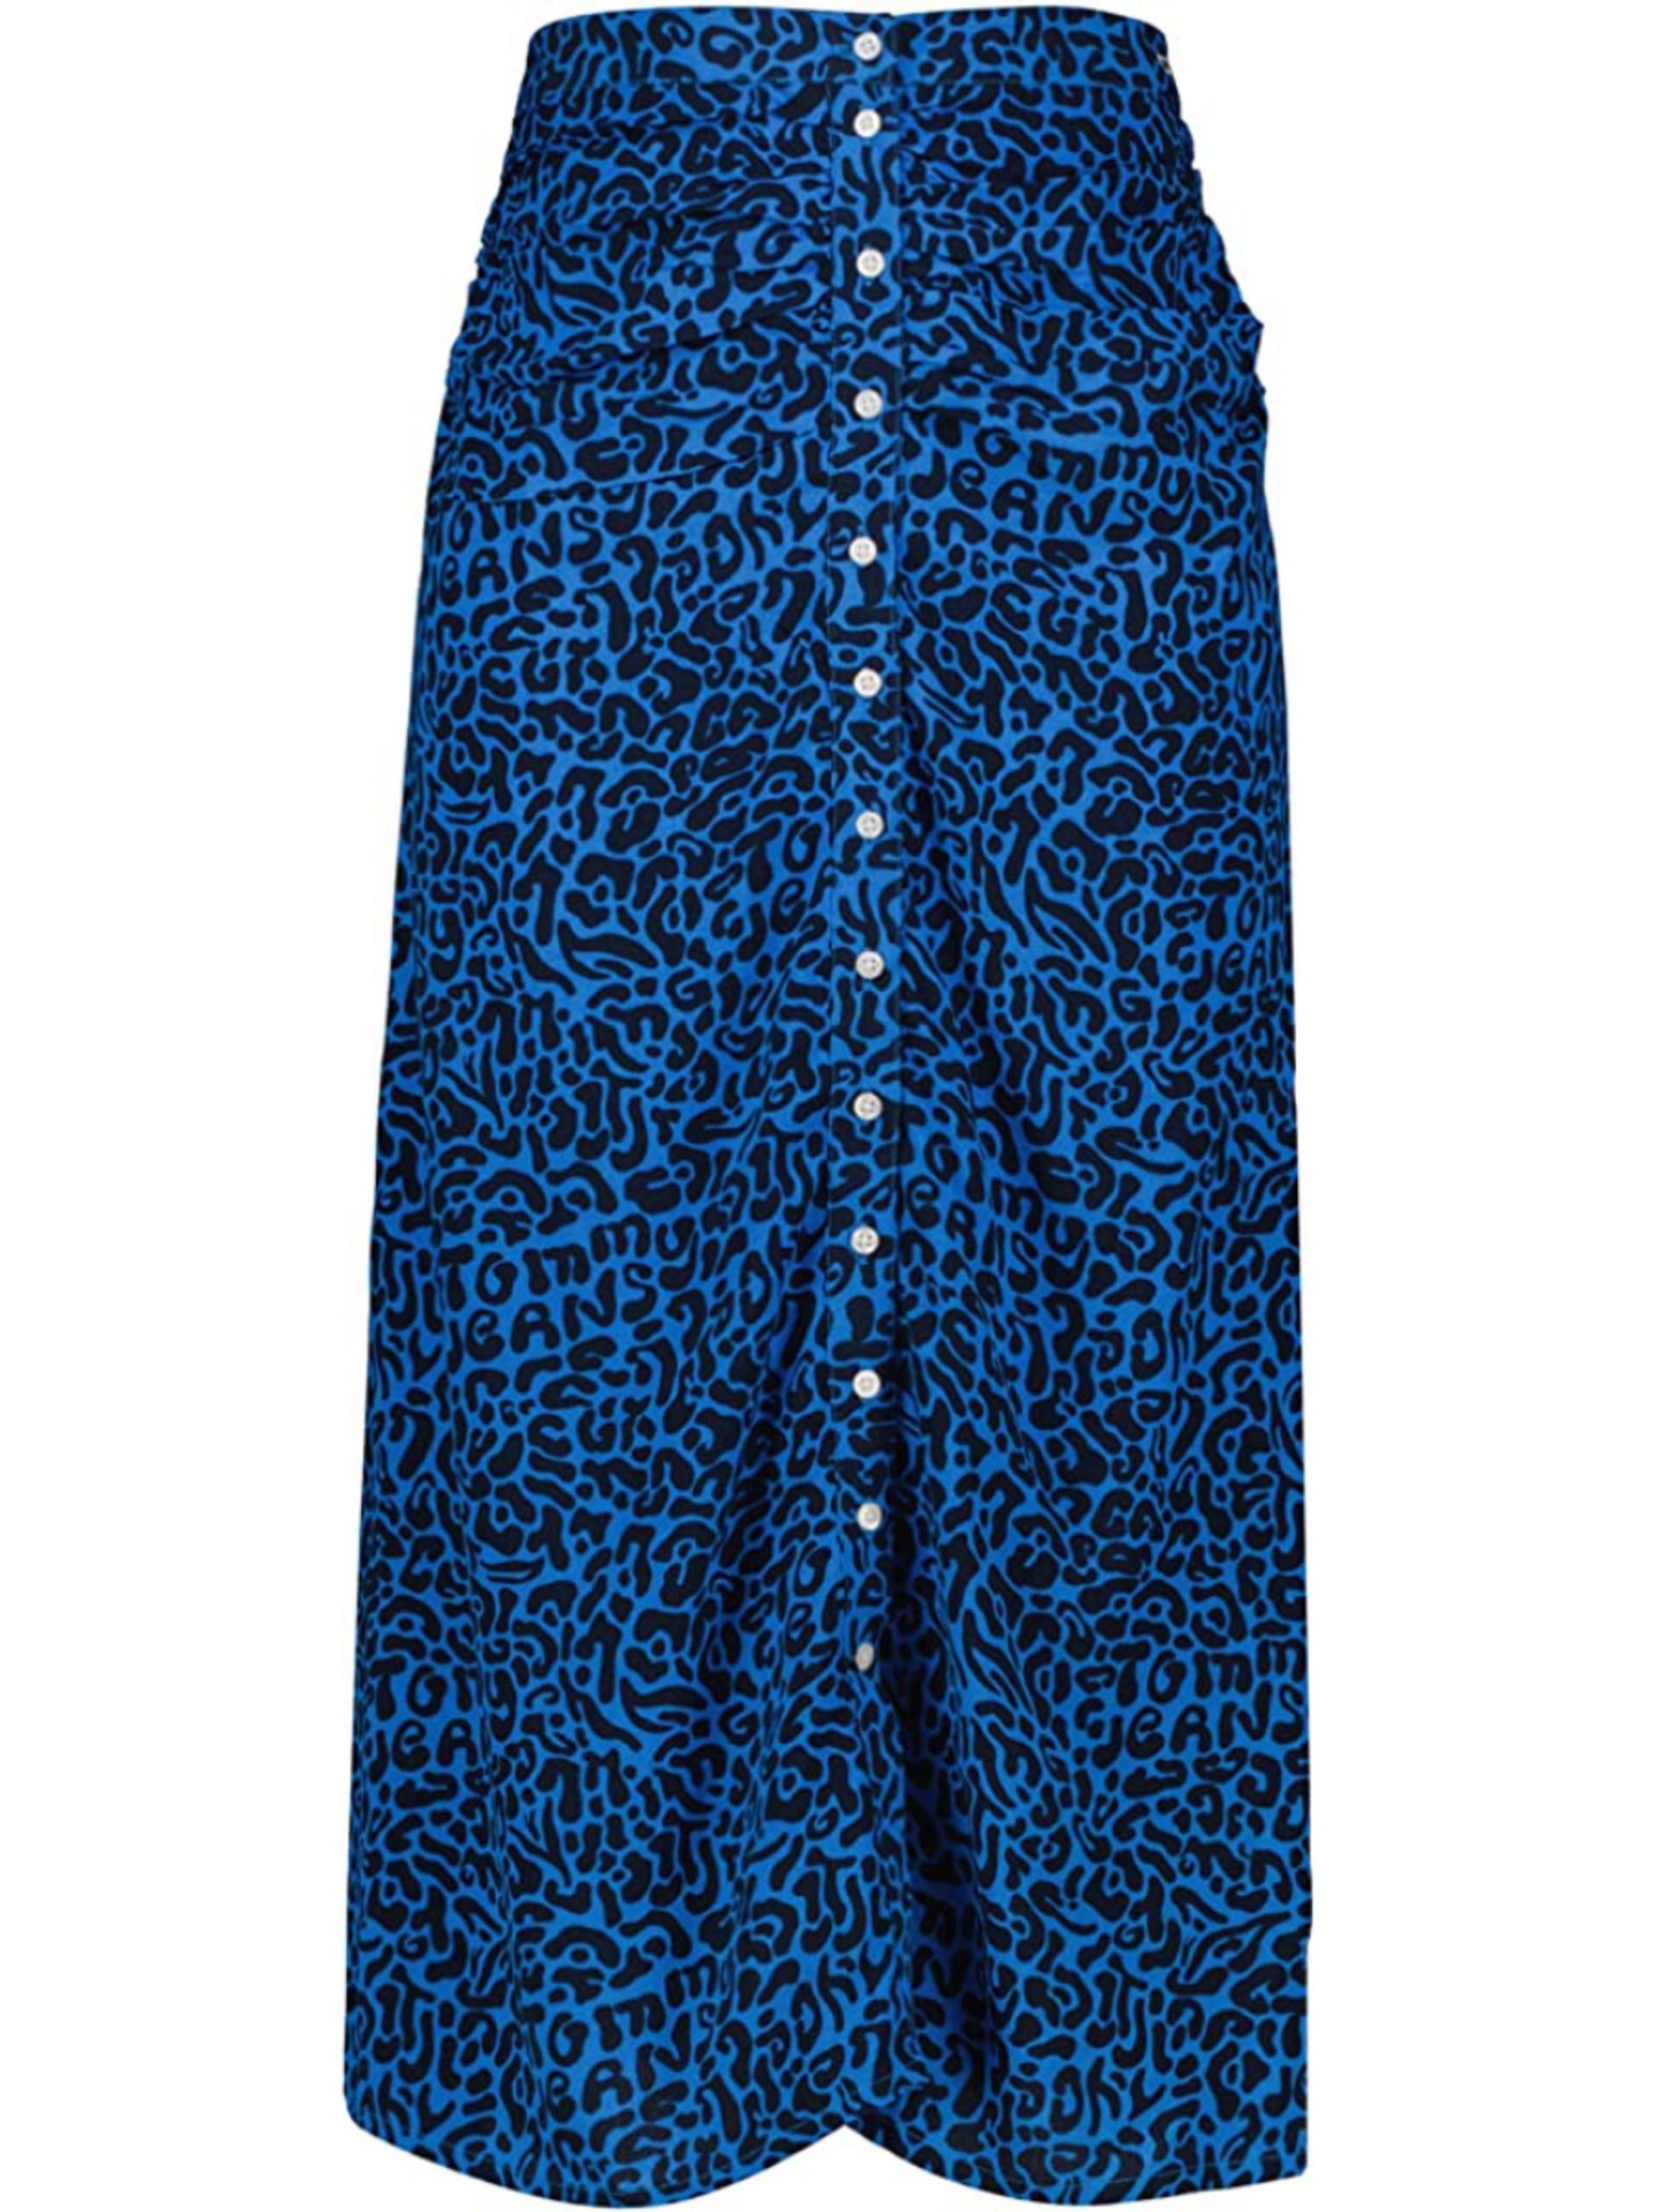 Tommy Jeans dámská modrá vzorovaná sukně - M (0KP)